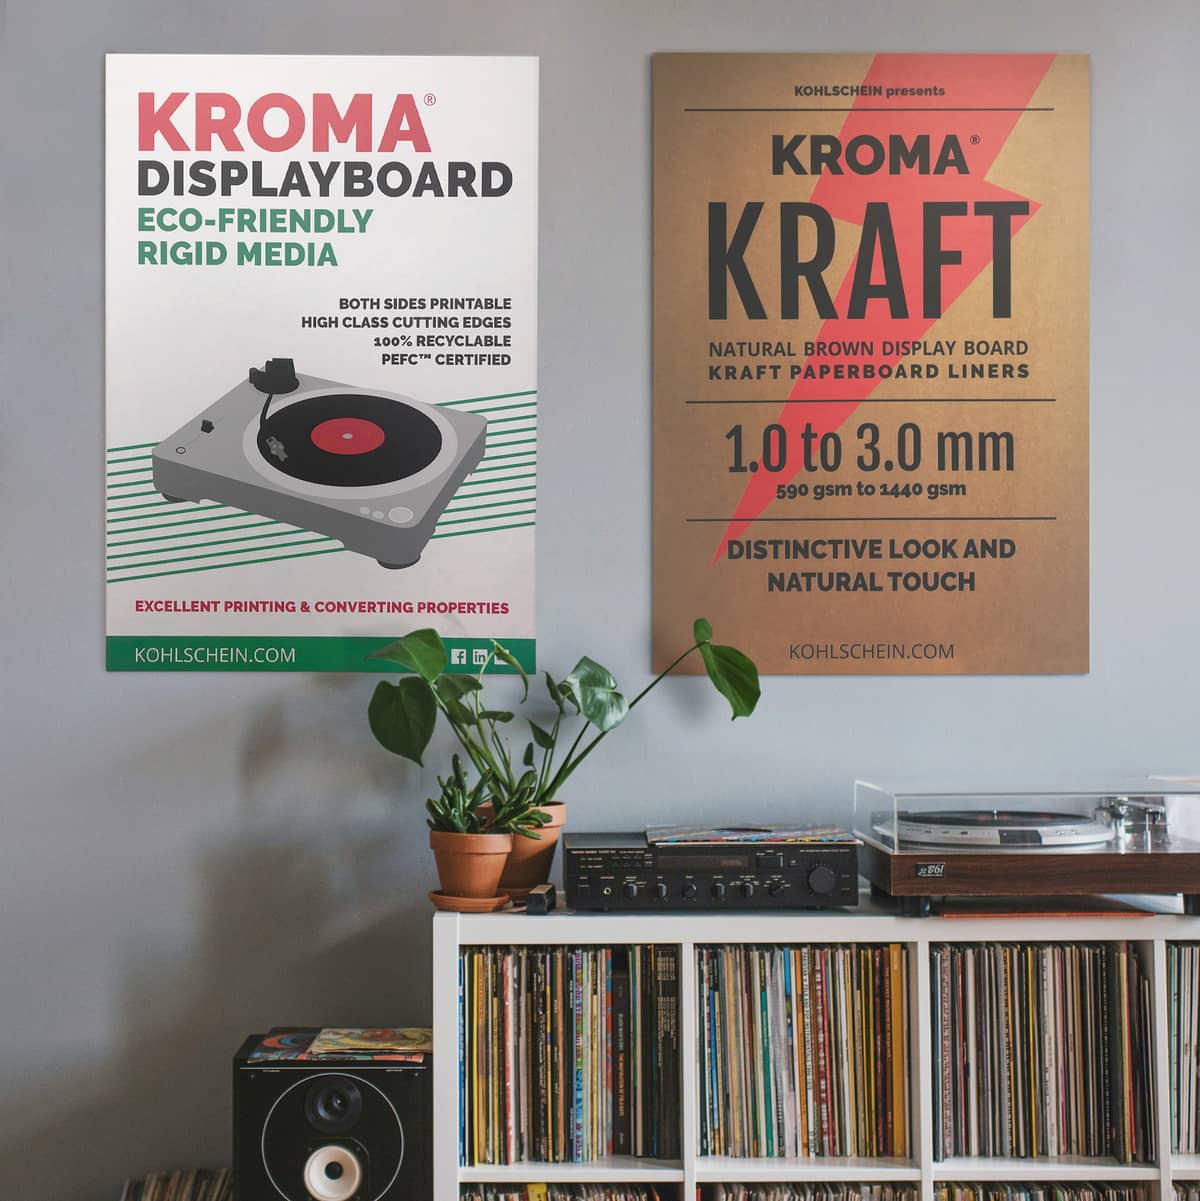 Schilder / Wandplakate aus KROMA Displayboard und KROMA Kraft